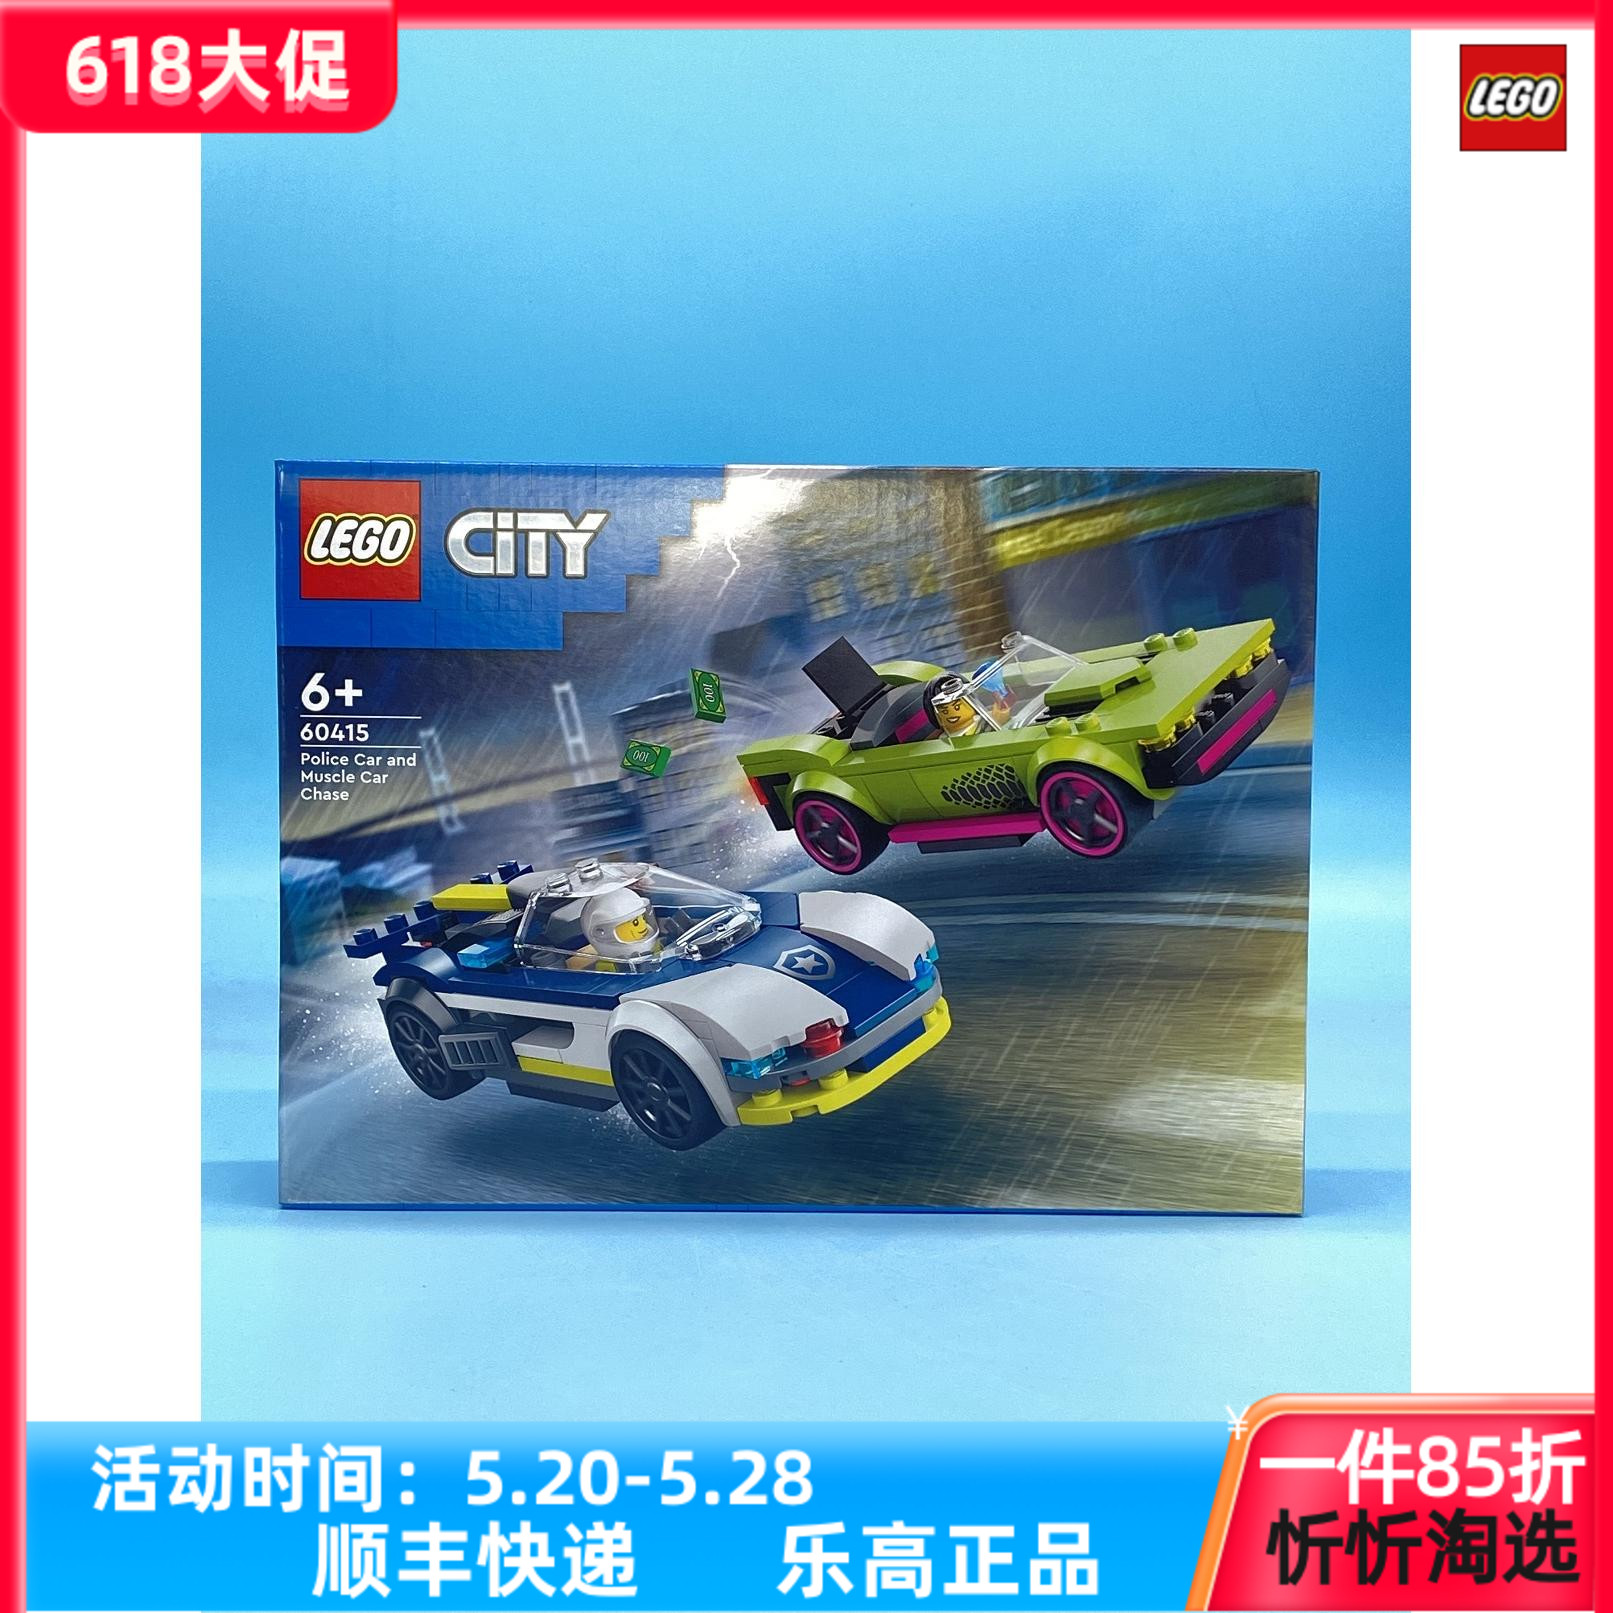 LEGO乐高城市系列60415警车大追击男生益智拼搭积木玩具礼物新品